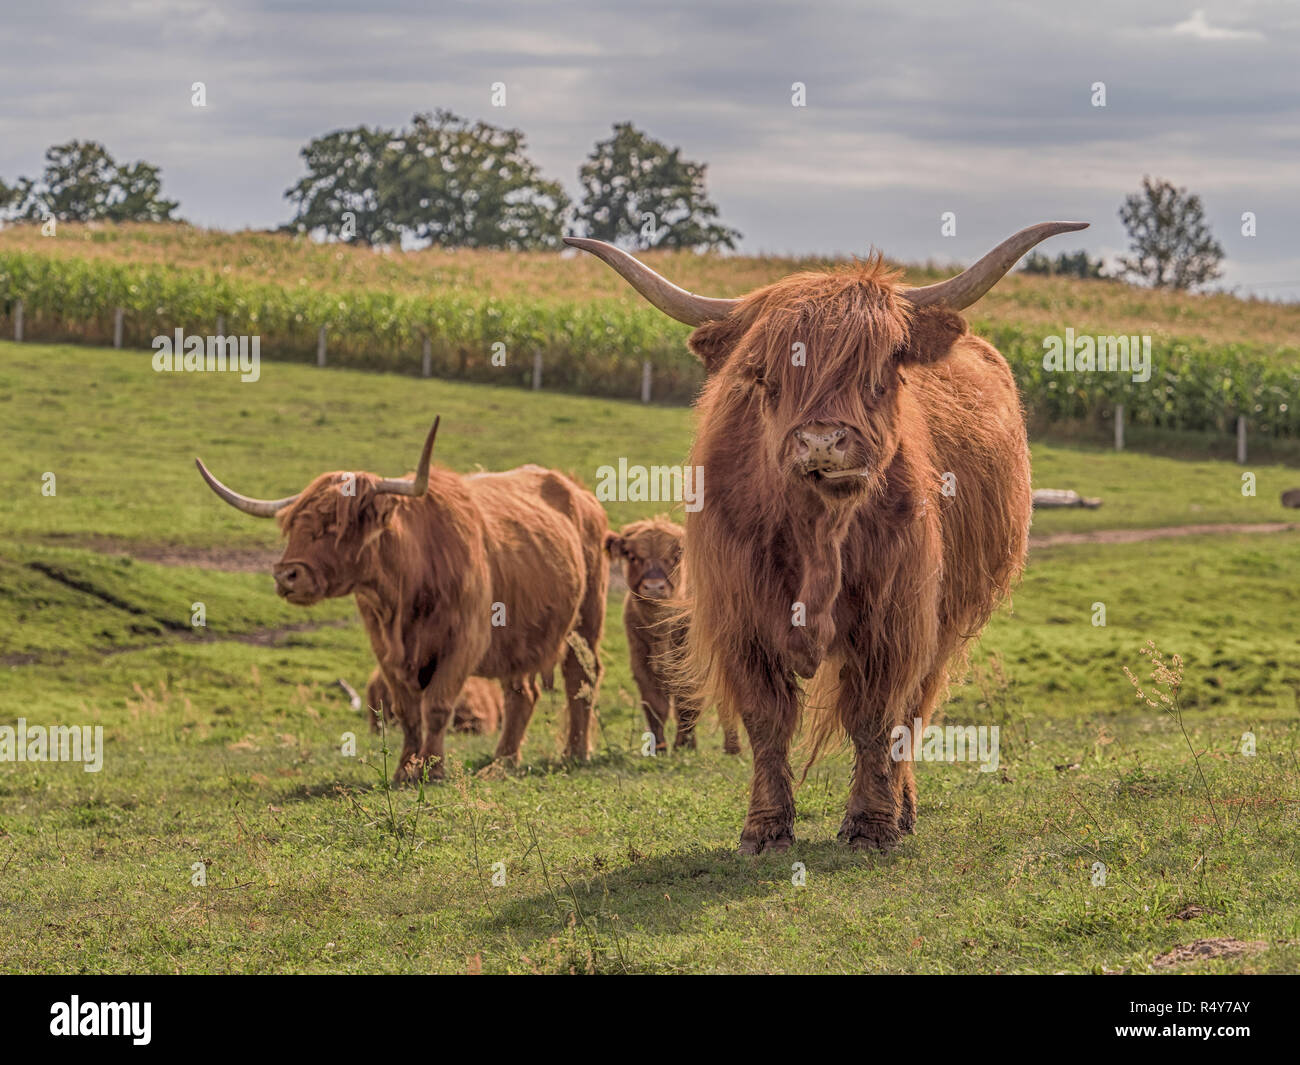 Highland cow on polish pré. Highland cattle (gaélique écossais : Bò Ghàidhealach ; Scots : Heilan coo) sont une Scottishcattle race. Banque D'Images